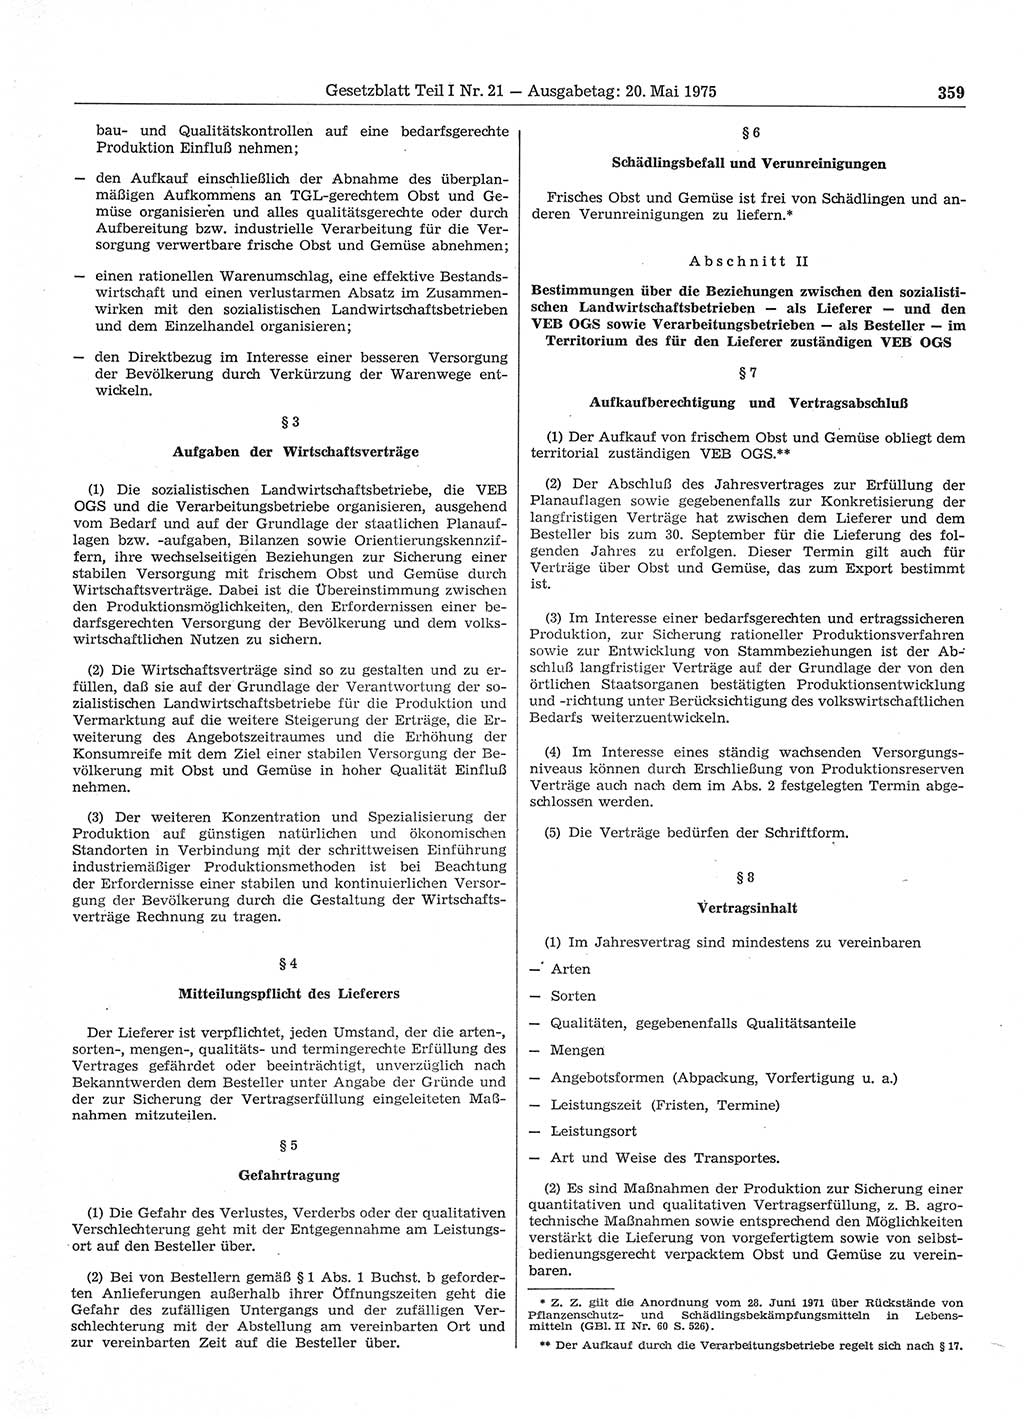 Gesetzblatt (GBl.) der Deutschen Demokratischen Republik (DDR) Teil Ⅰ 1975, Seite 359 (GBl. DDR Ⅰ 1975, S. 359)